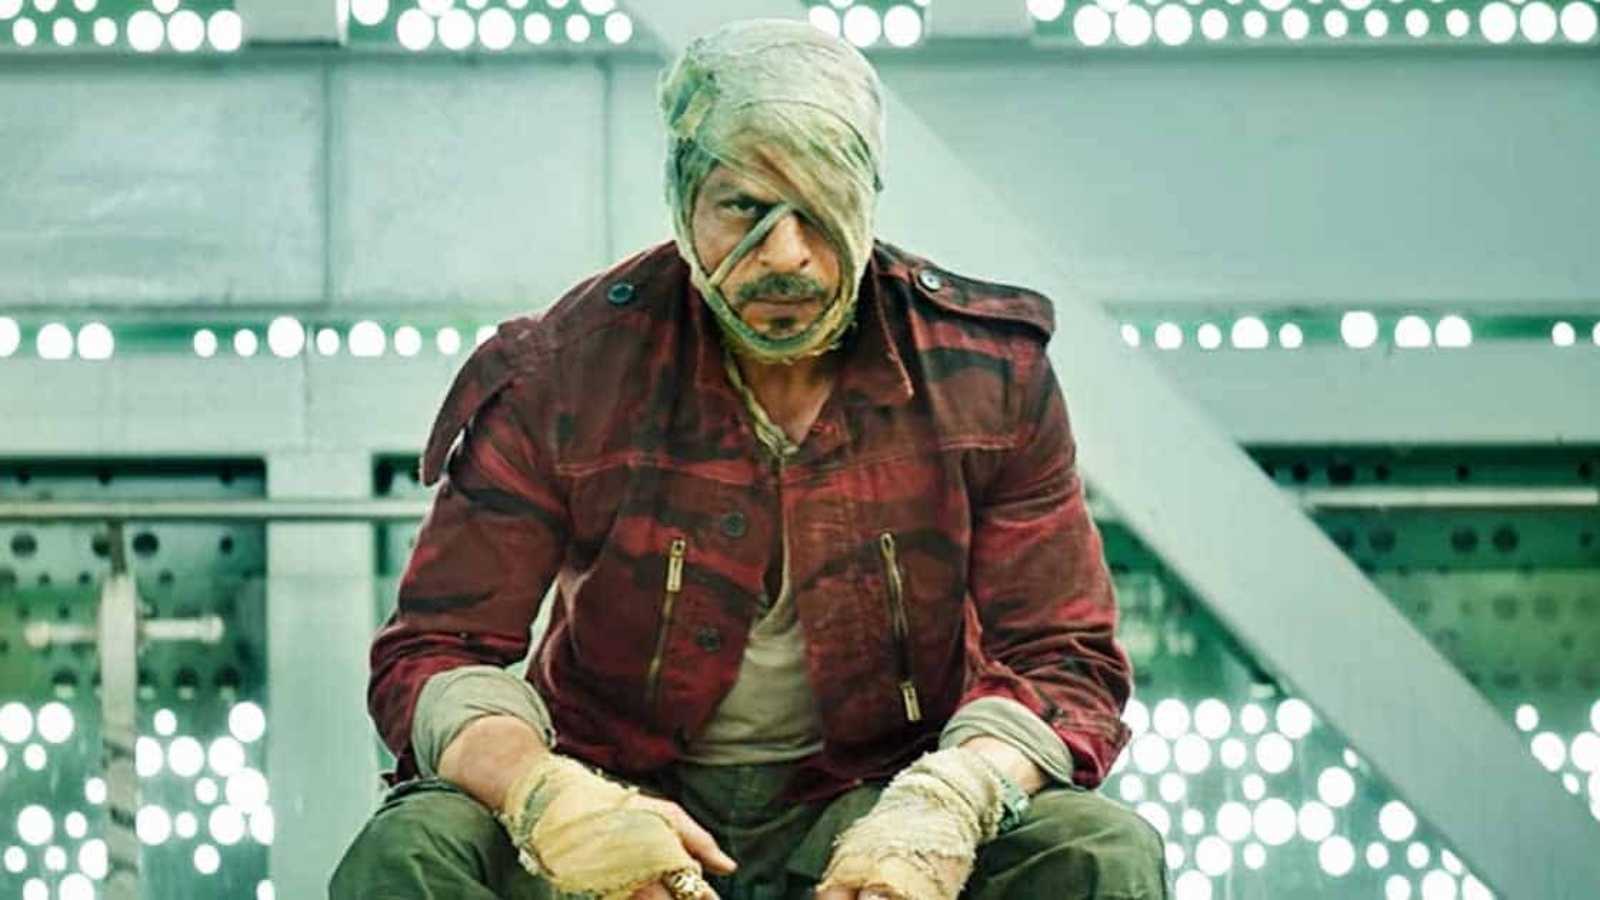 शाहरुख खान की फिल्म जवान में नजर आएगा ये बड़ा बॉलीवुड स्टार, कैमियो से लगाने वाला है आग